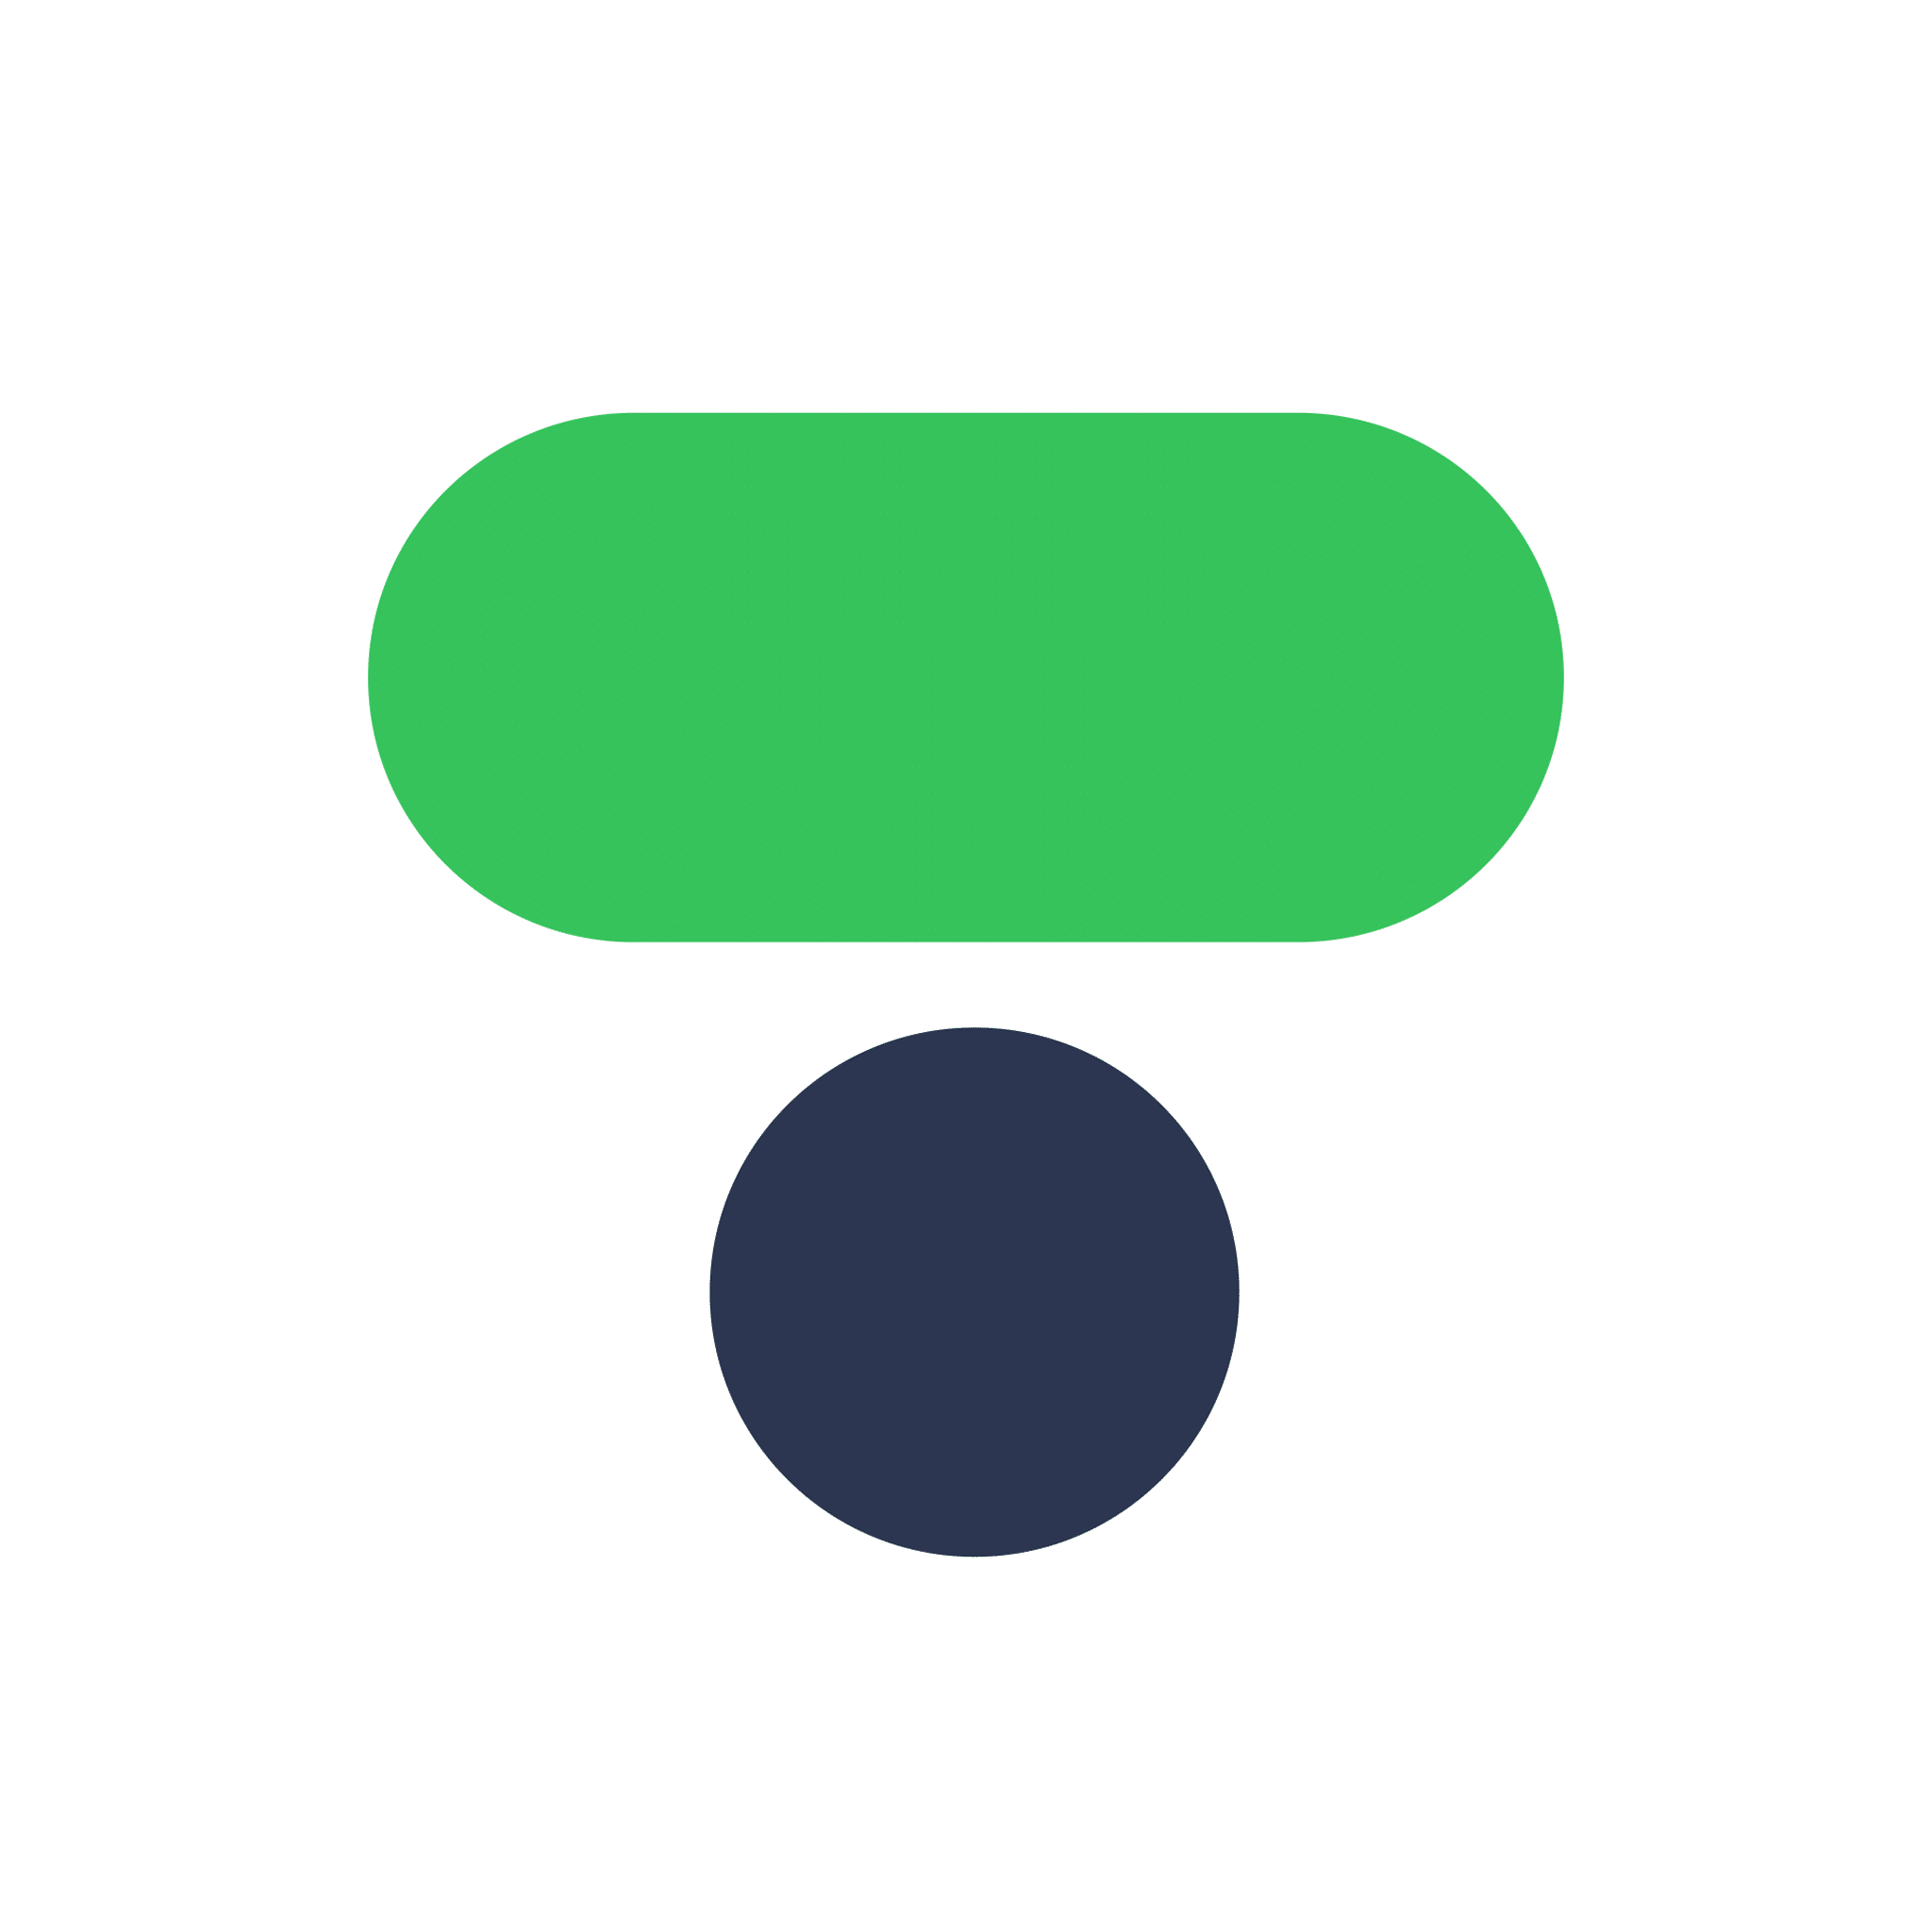 Et grafisk ikon, der ligner et udråbstegn, sammensat af en grøn oval på toppen og en blå cirkel under den.